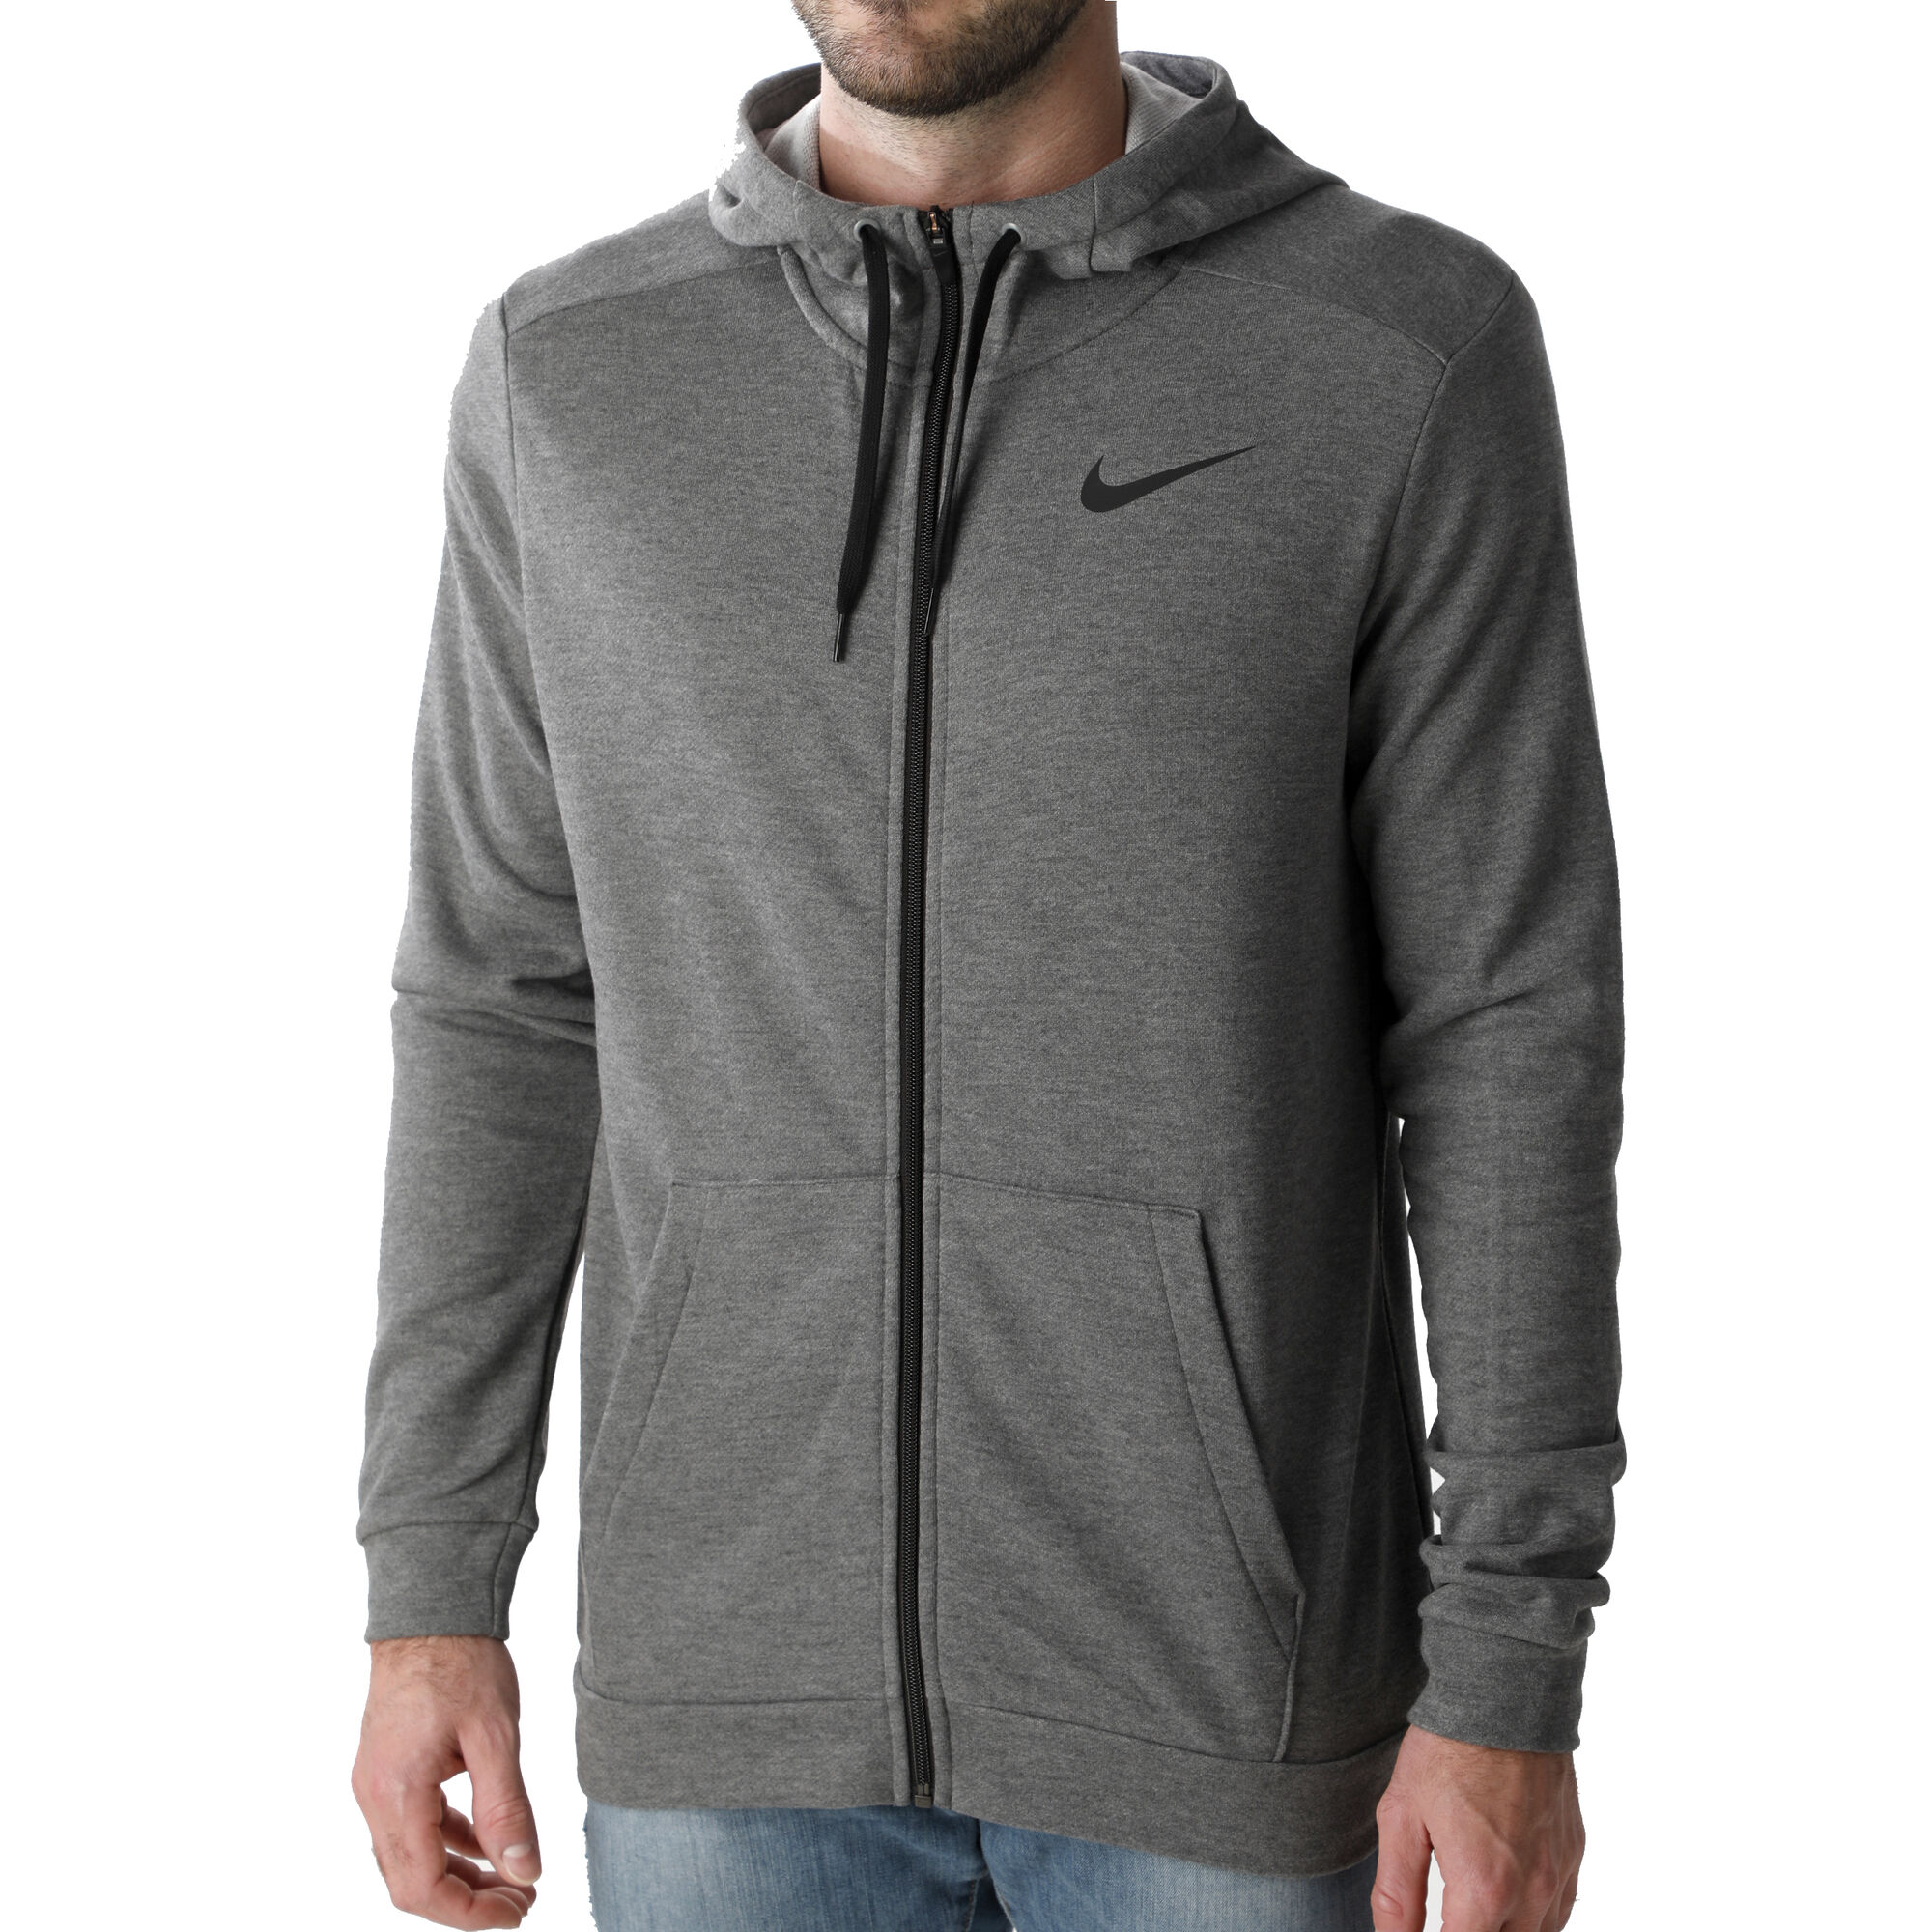 buy Nike Dri-Fit Zip Hoodie Men - Dark Grey, Black online | Tennis-Point